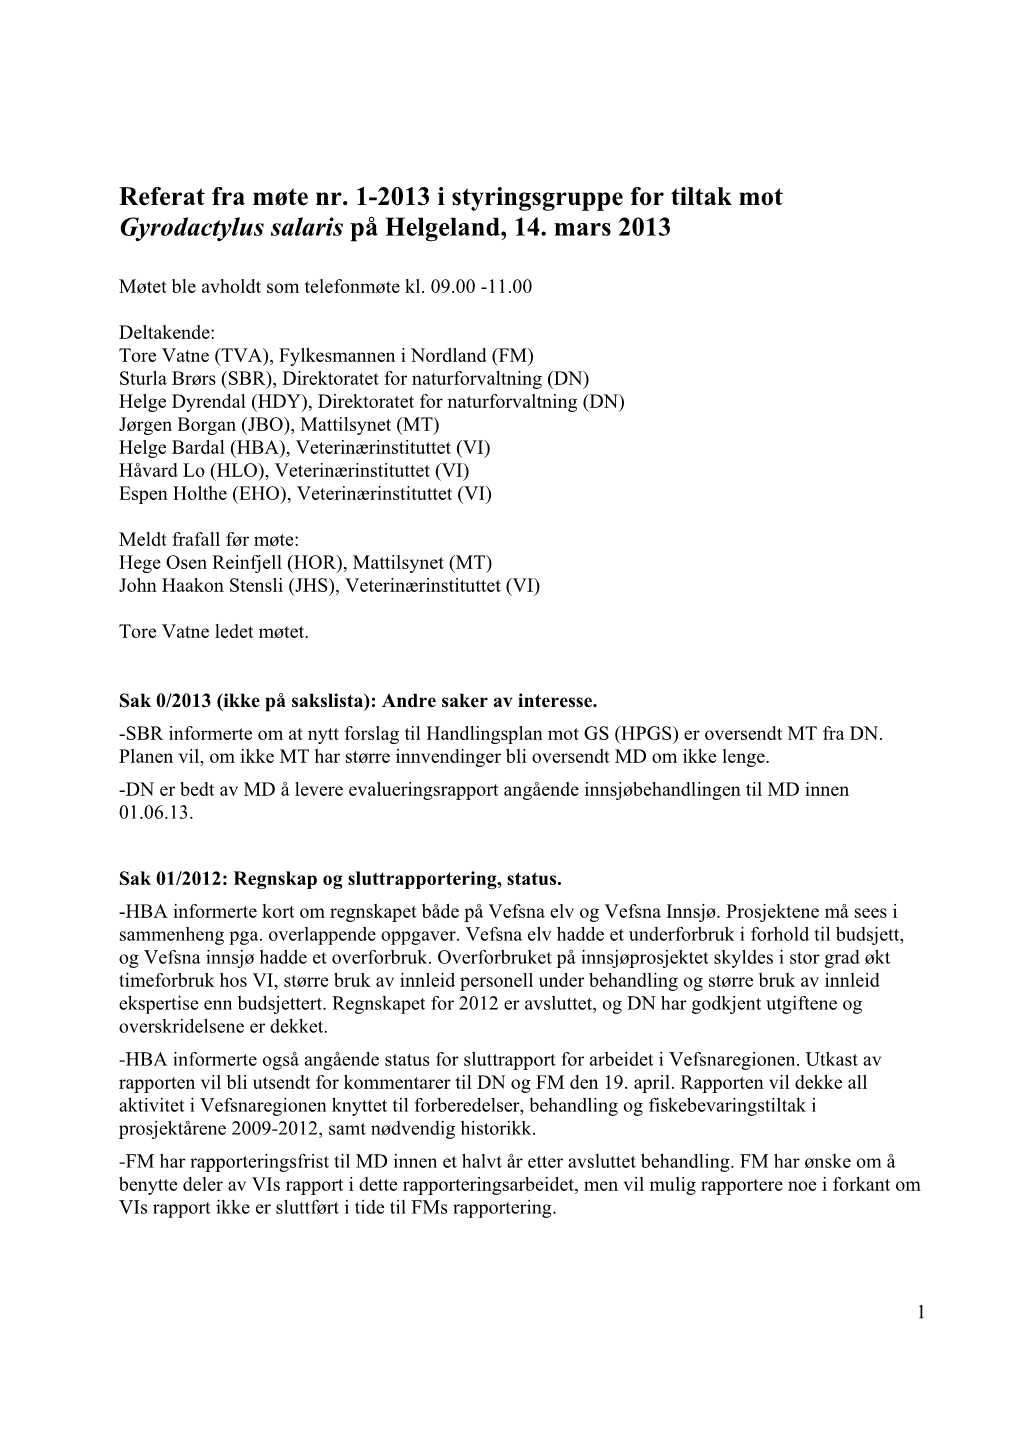 Referat Fra Møte Nr. 1-2013 I Styringsgruppe for Tiltak Mot Gyrodactylus Salaris På Helgeland, 14